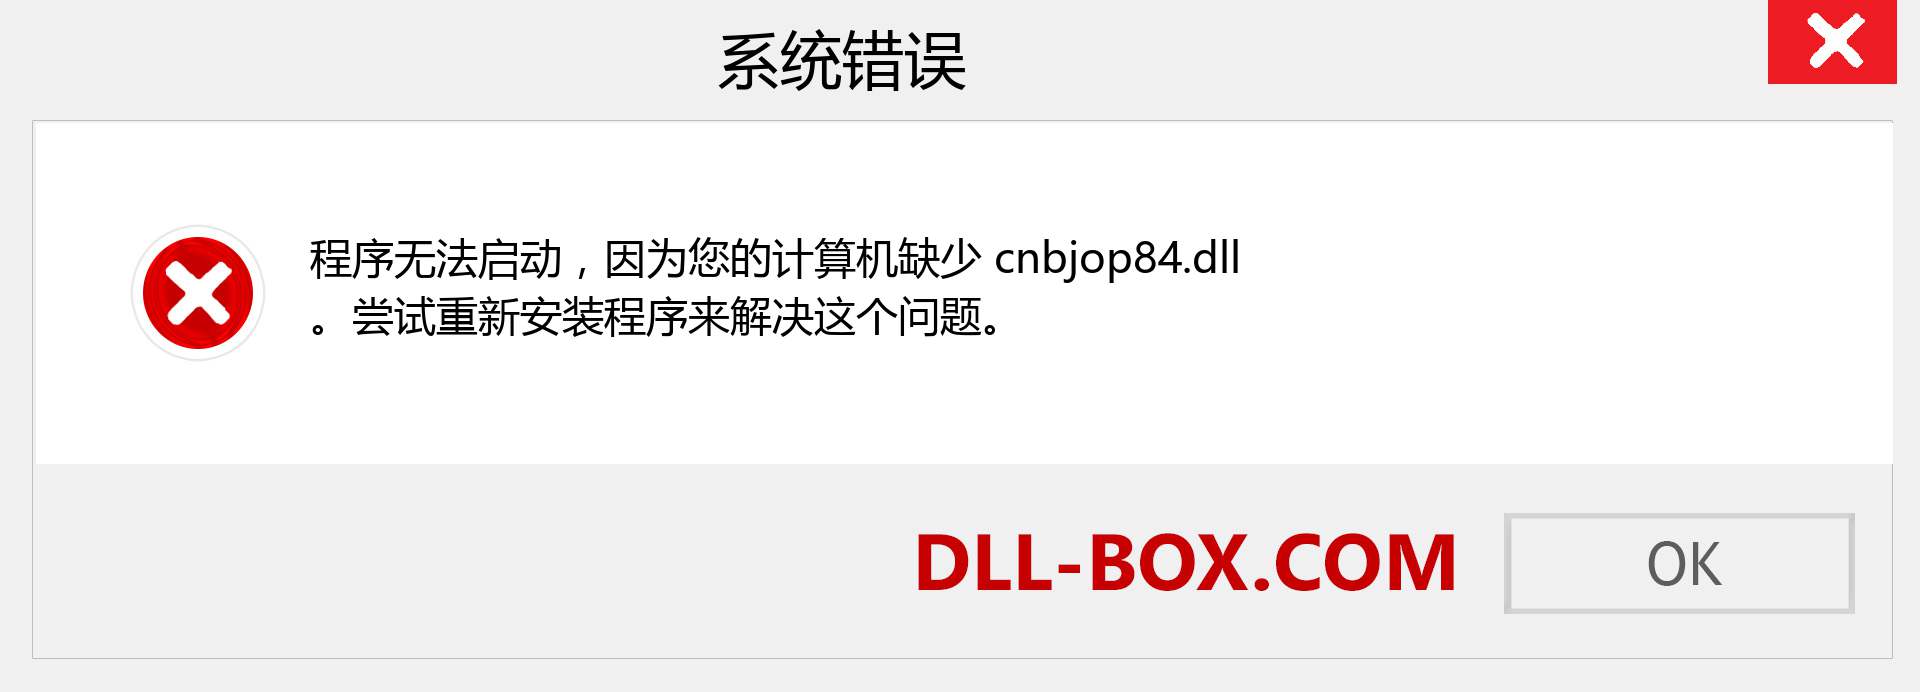 cnbjop84.dll 文件丢失？。 适用于 Windows 7、8、10 的下载 - 修复 Windows、照片、图像上的 cnbjop84 dll 丢失错误